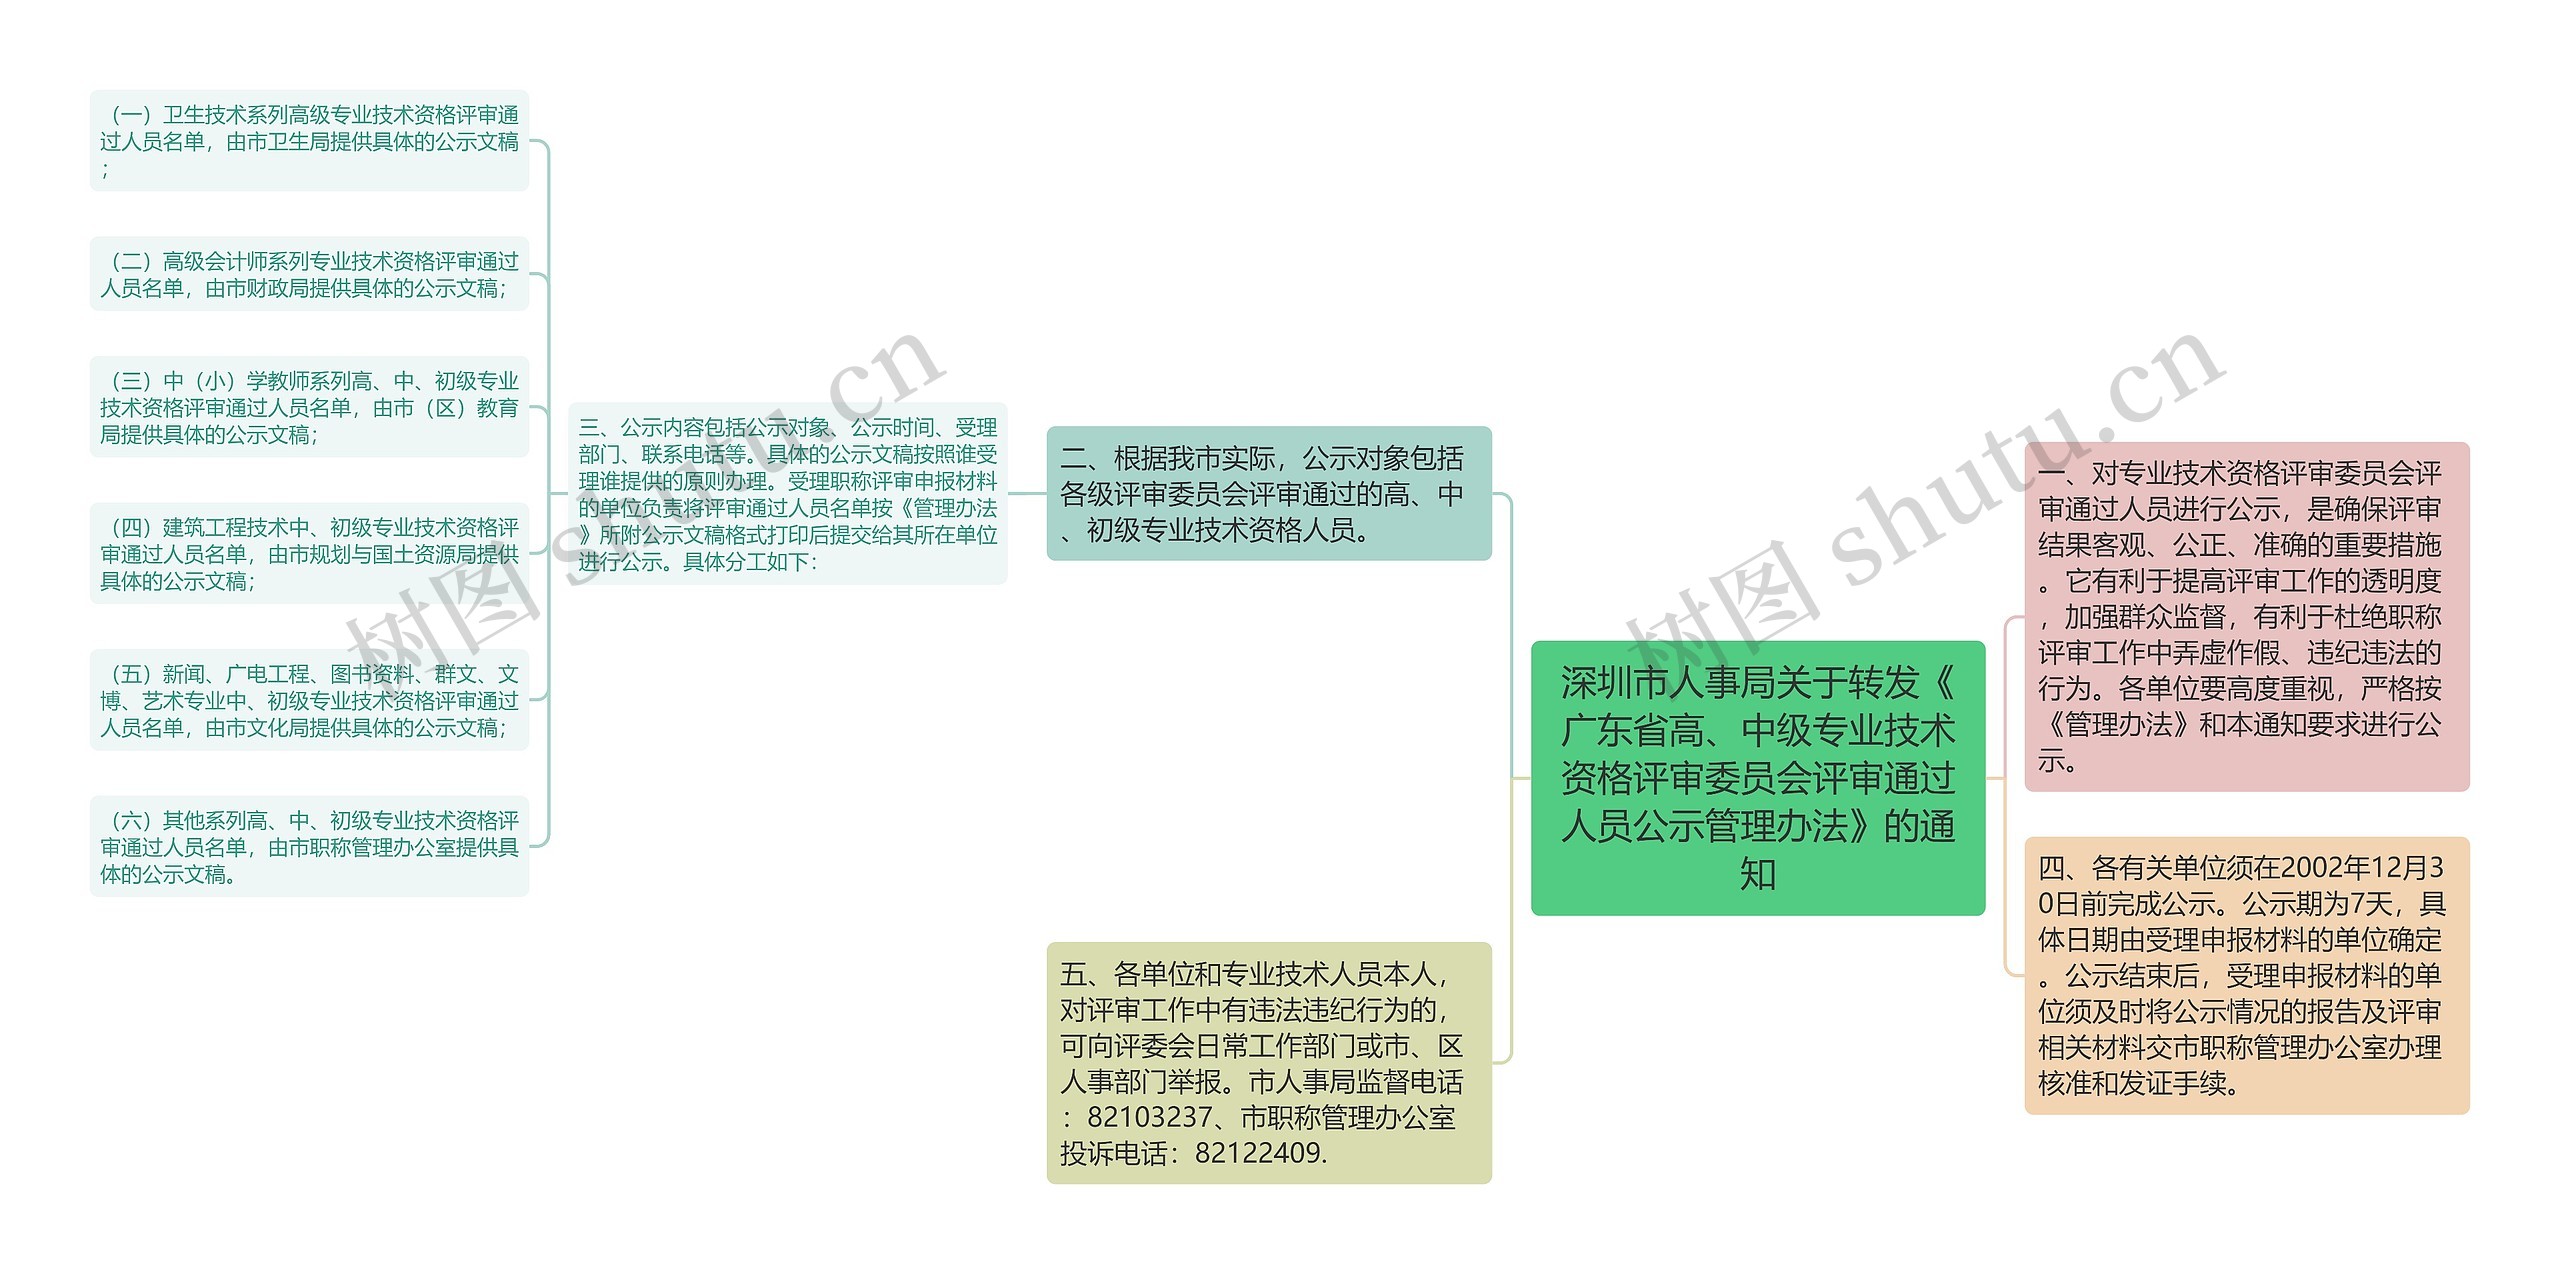 深圳市人事局关于转发《广东省高、中级专业技术资格评审委员会评审通过人员公示管理办法》的通知